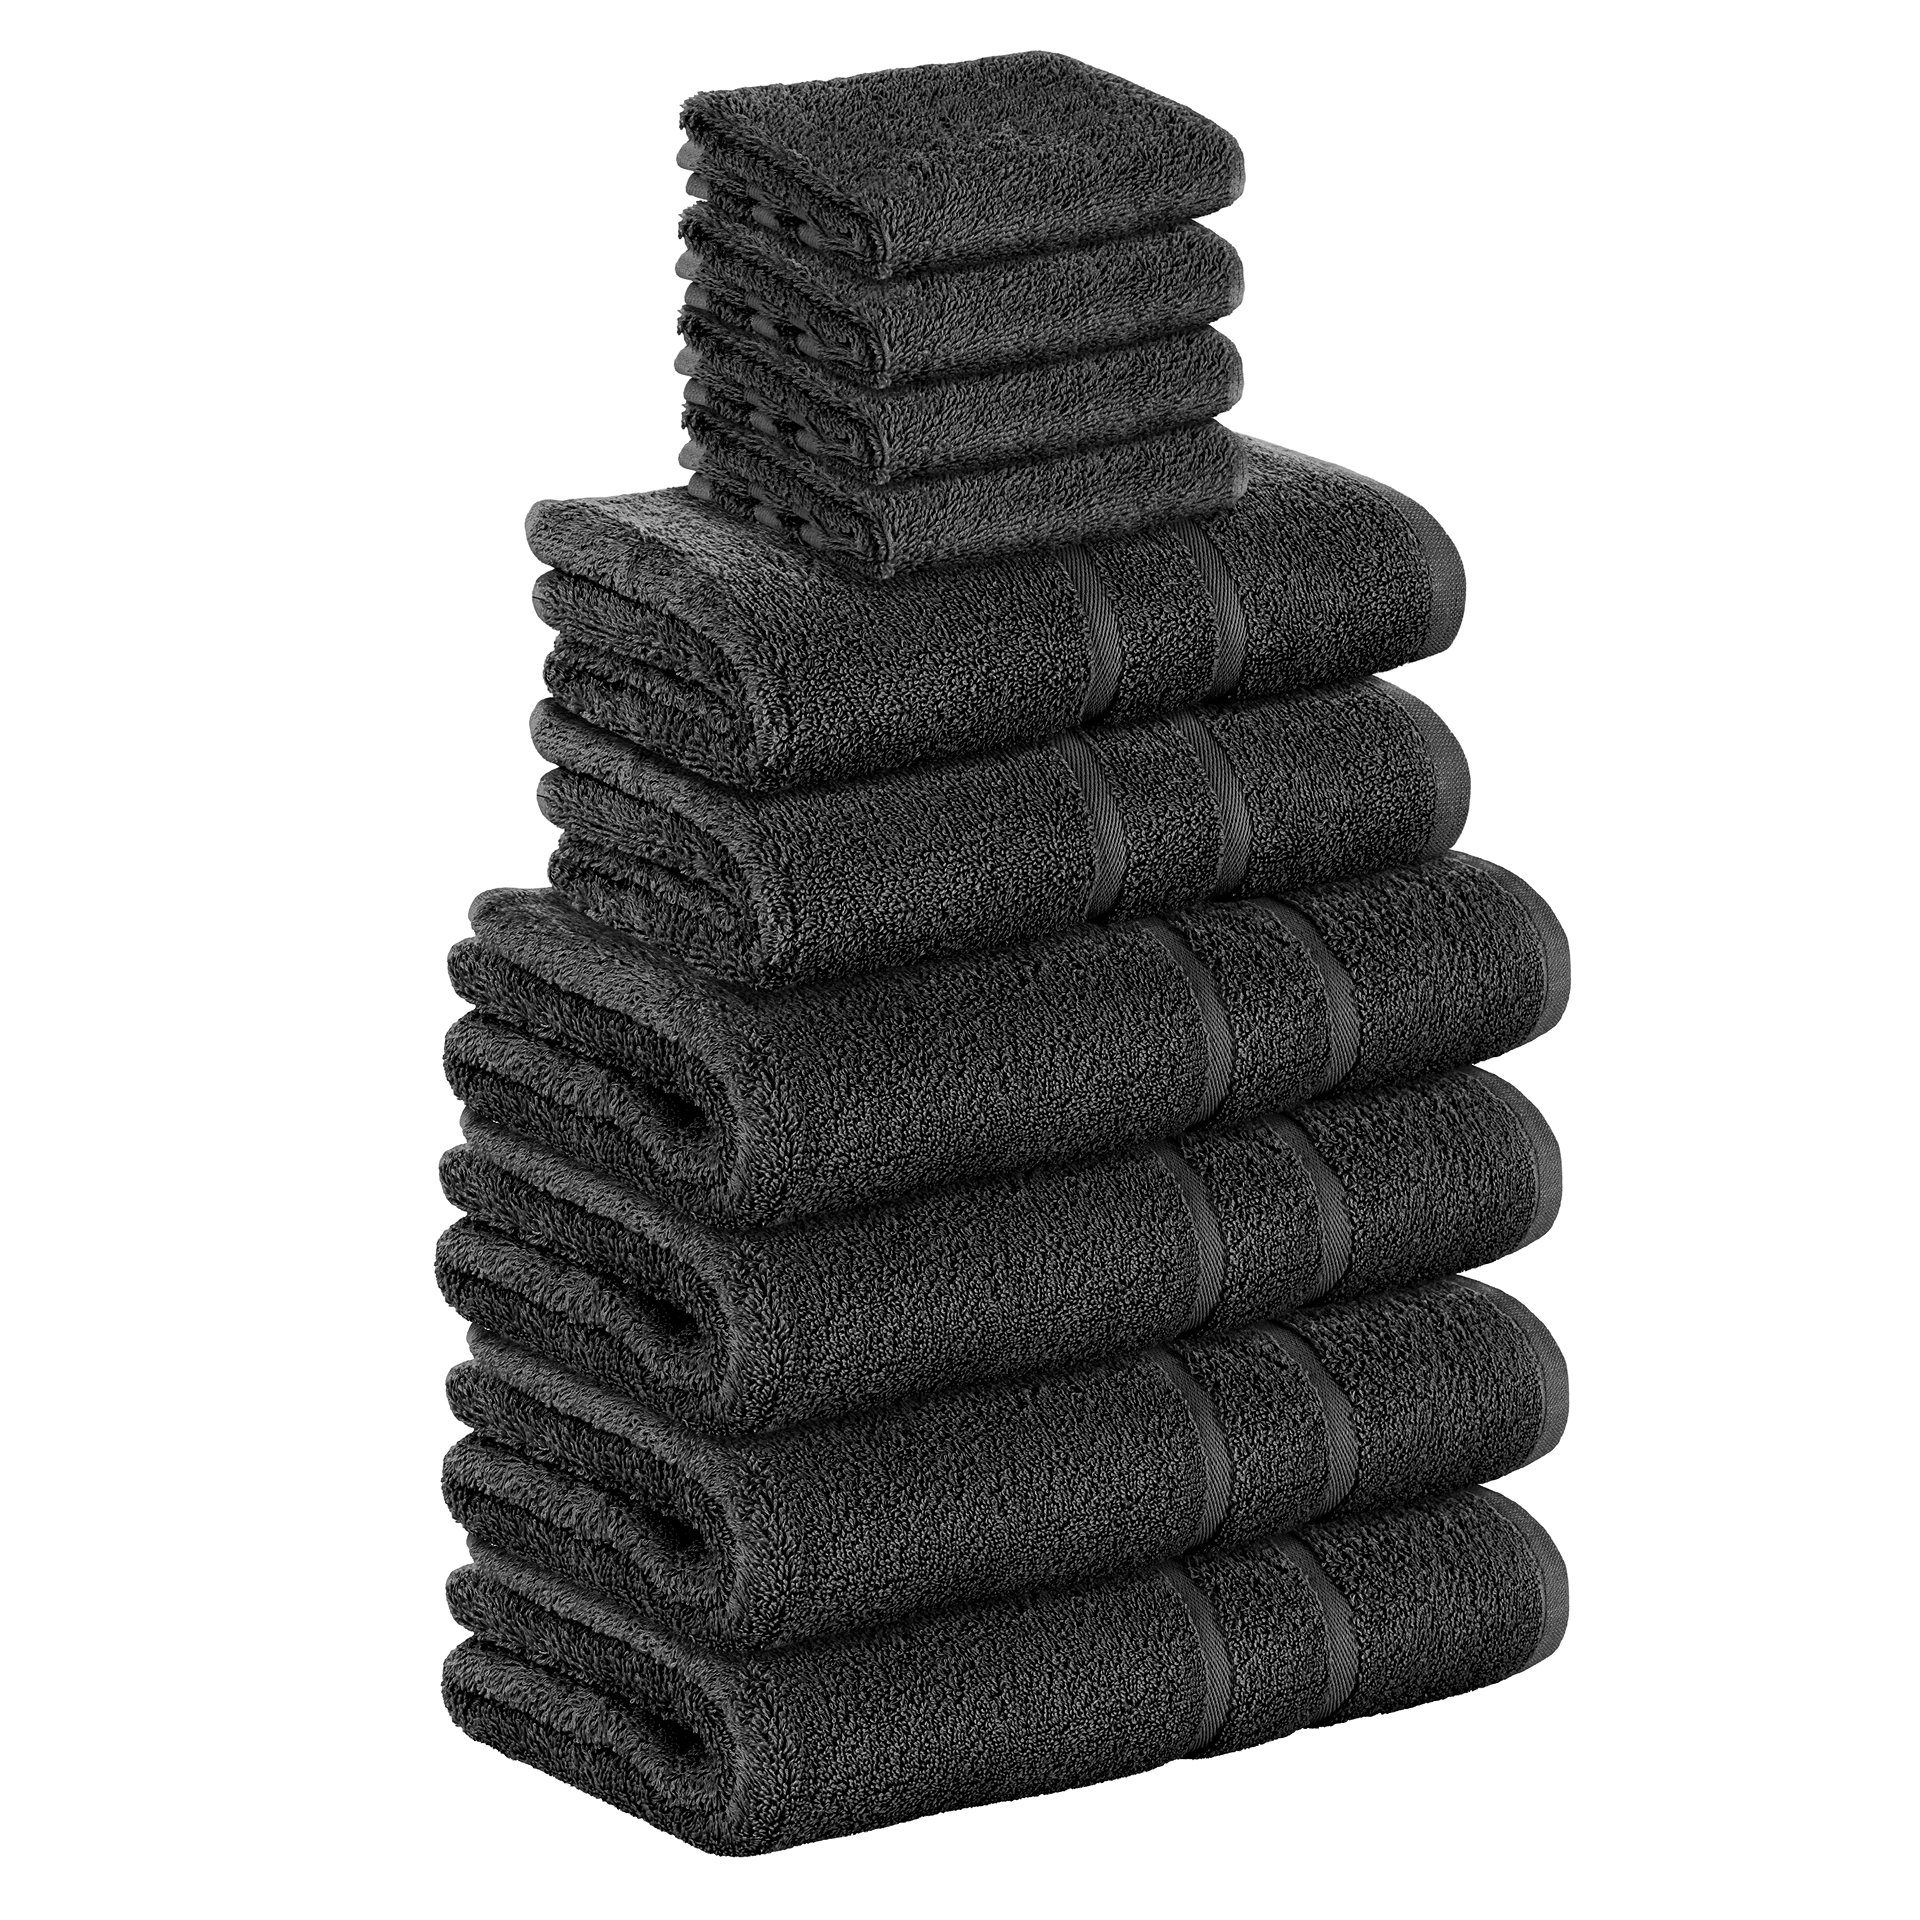 StickandShine Handtuch Set 4x Gästehandtuch 2x Handtücher 4x Duschtücher als SET in verschiedenen Farben (10 Teilig) 100% Baumwolle 500 GSM Frottee 10er Handtuch Pack, 100% Baumwolle 500 GSM Schwarz | Handtuch-Sets